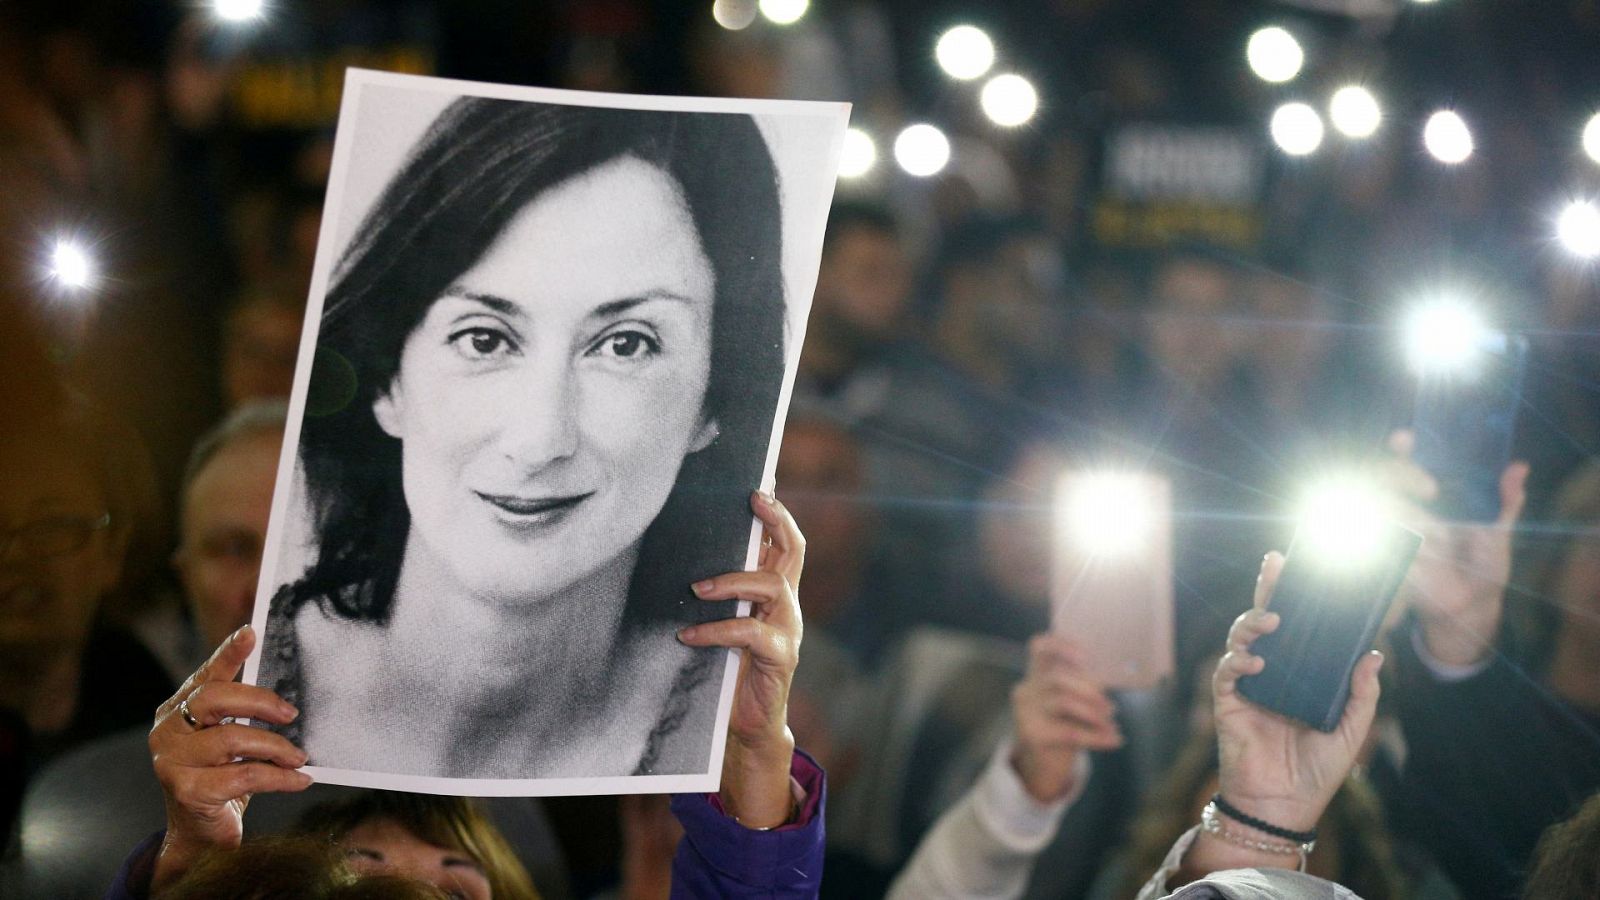 Homenaje a la periodista asesinada en Malta, Daphne Caruano